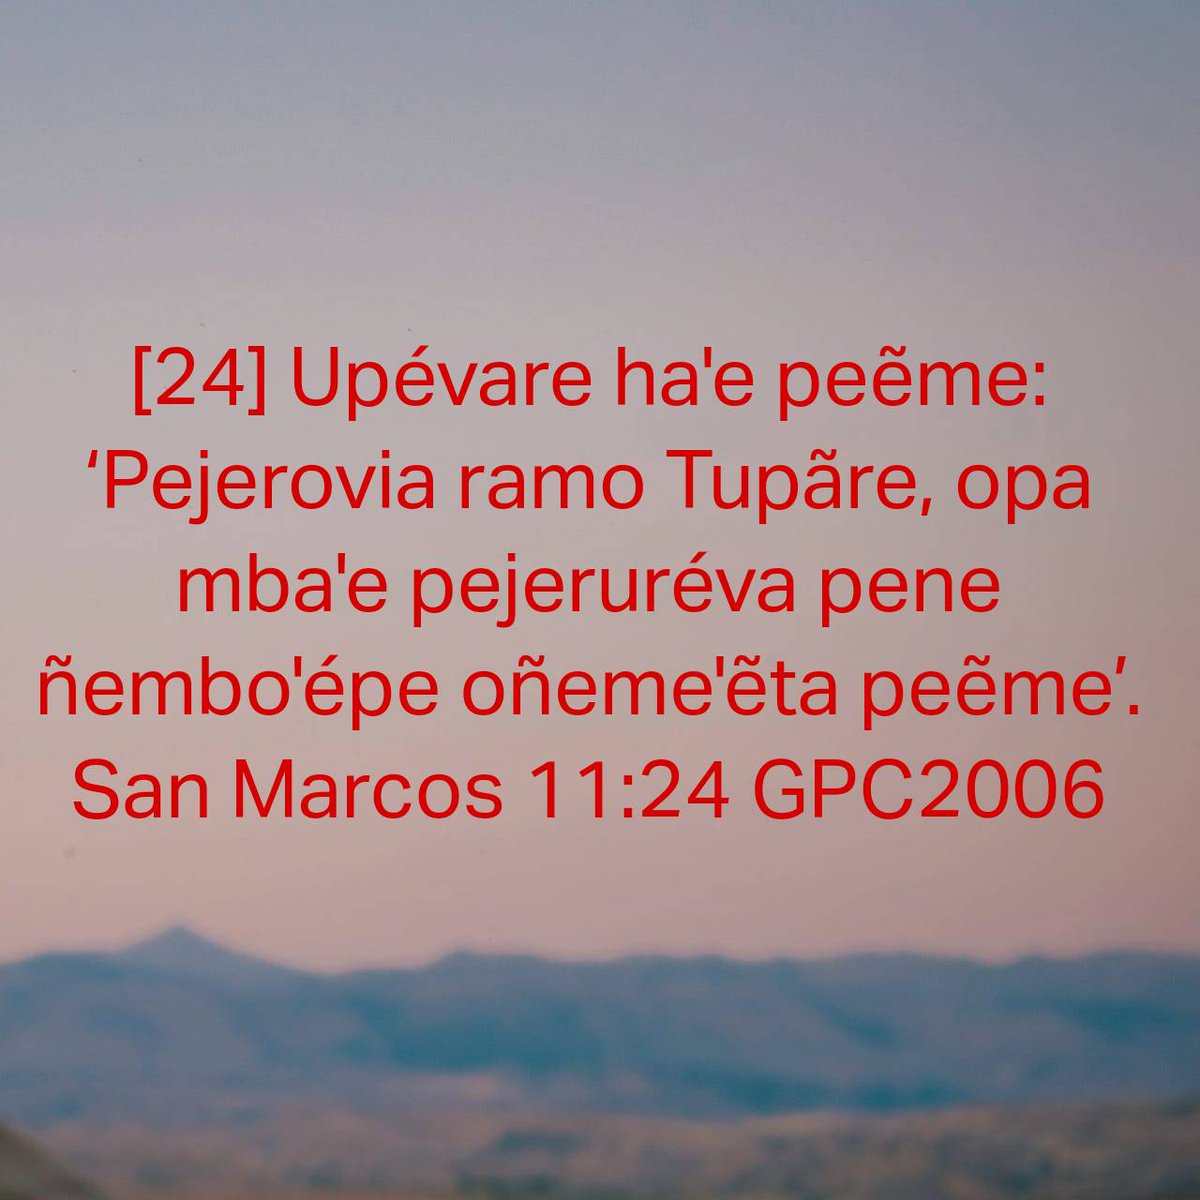 San Marcos 11:24 GPC2006
[24] Upévare ha'e peẽme: ‘Pejerovia ramo Tupãre, opa mba'e pejeruréva pene ñembo'épe oñeme'ẽta peẽme’. 

bible.com/bible/66/mrk.1…